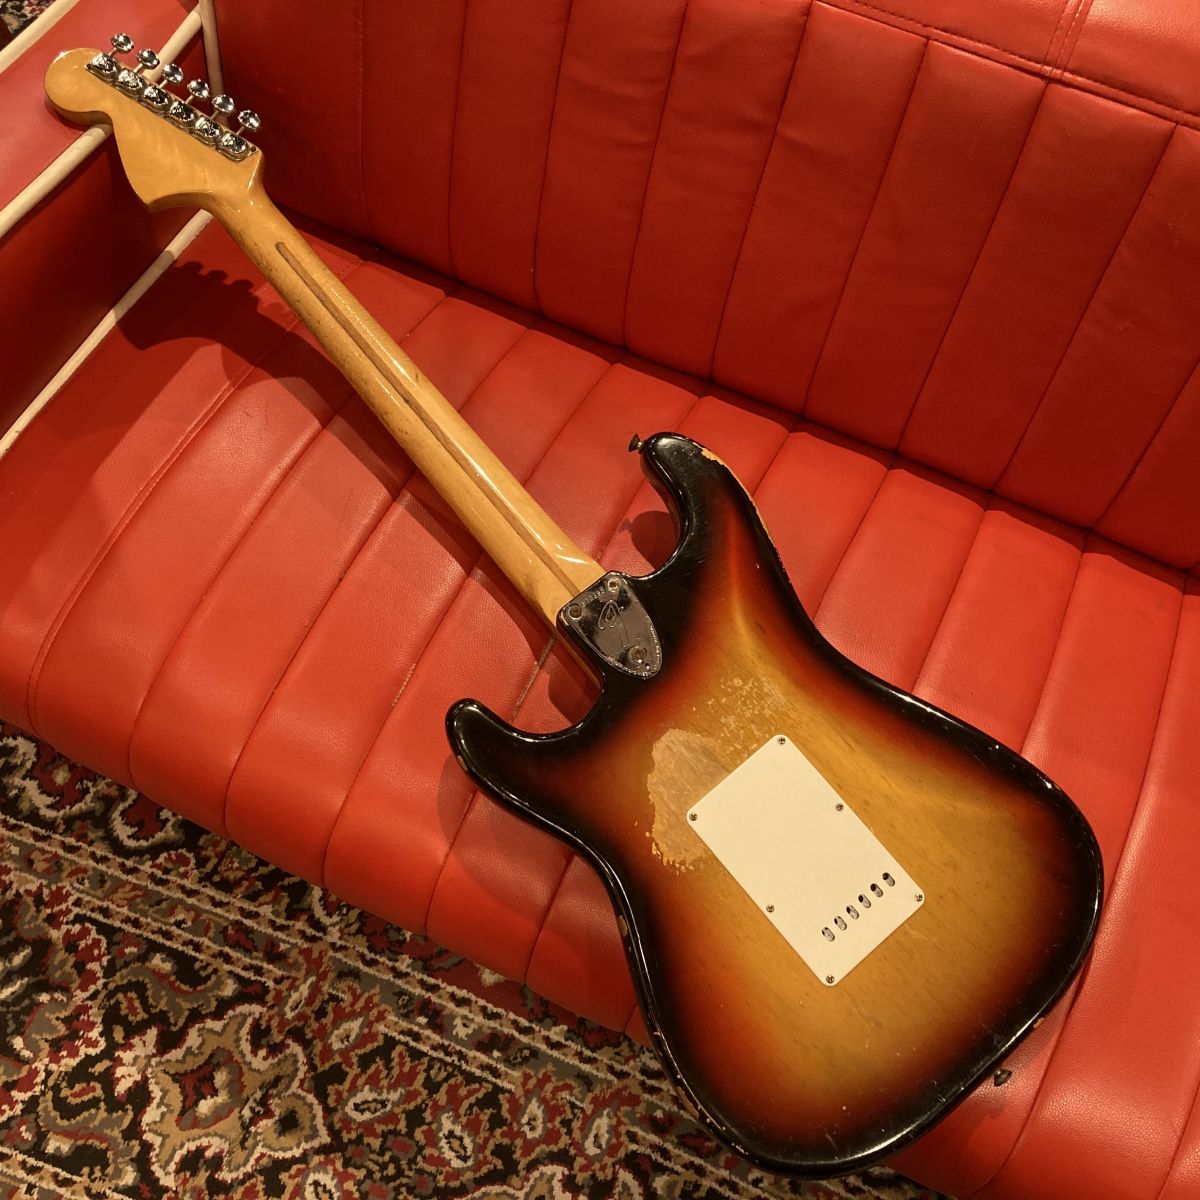 [SN 372395] USED Fender / 1973 Stratocaster Sunburst/Rose [04]